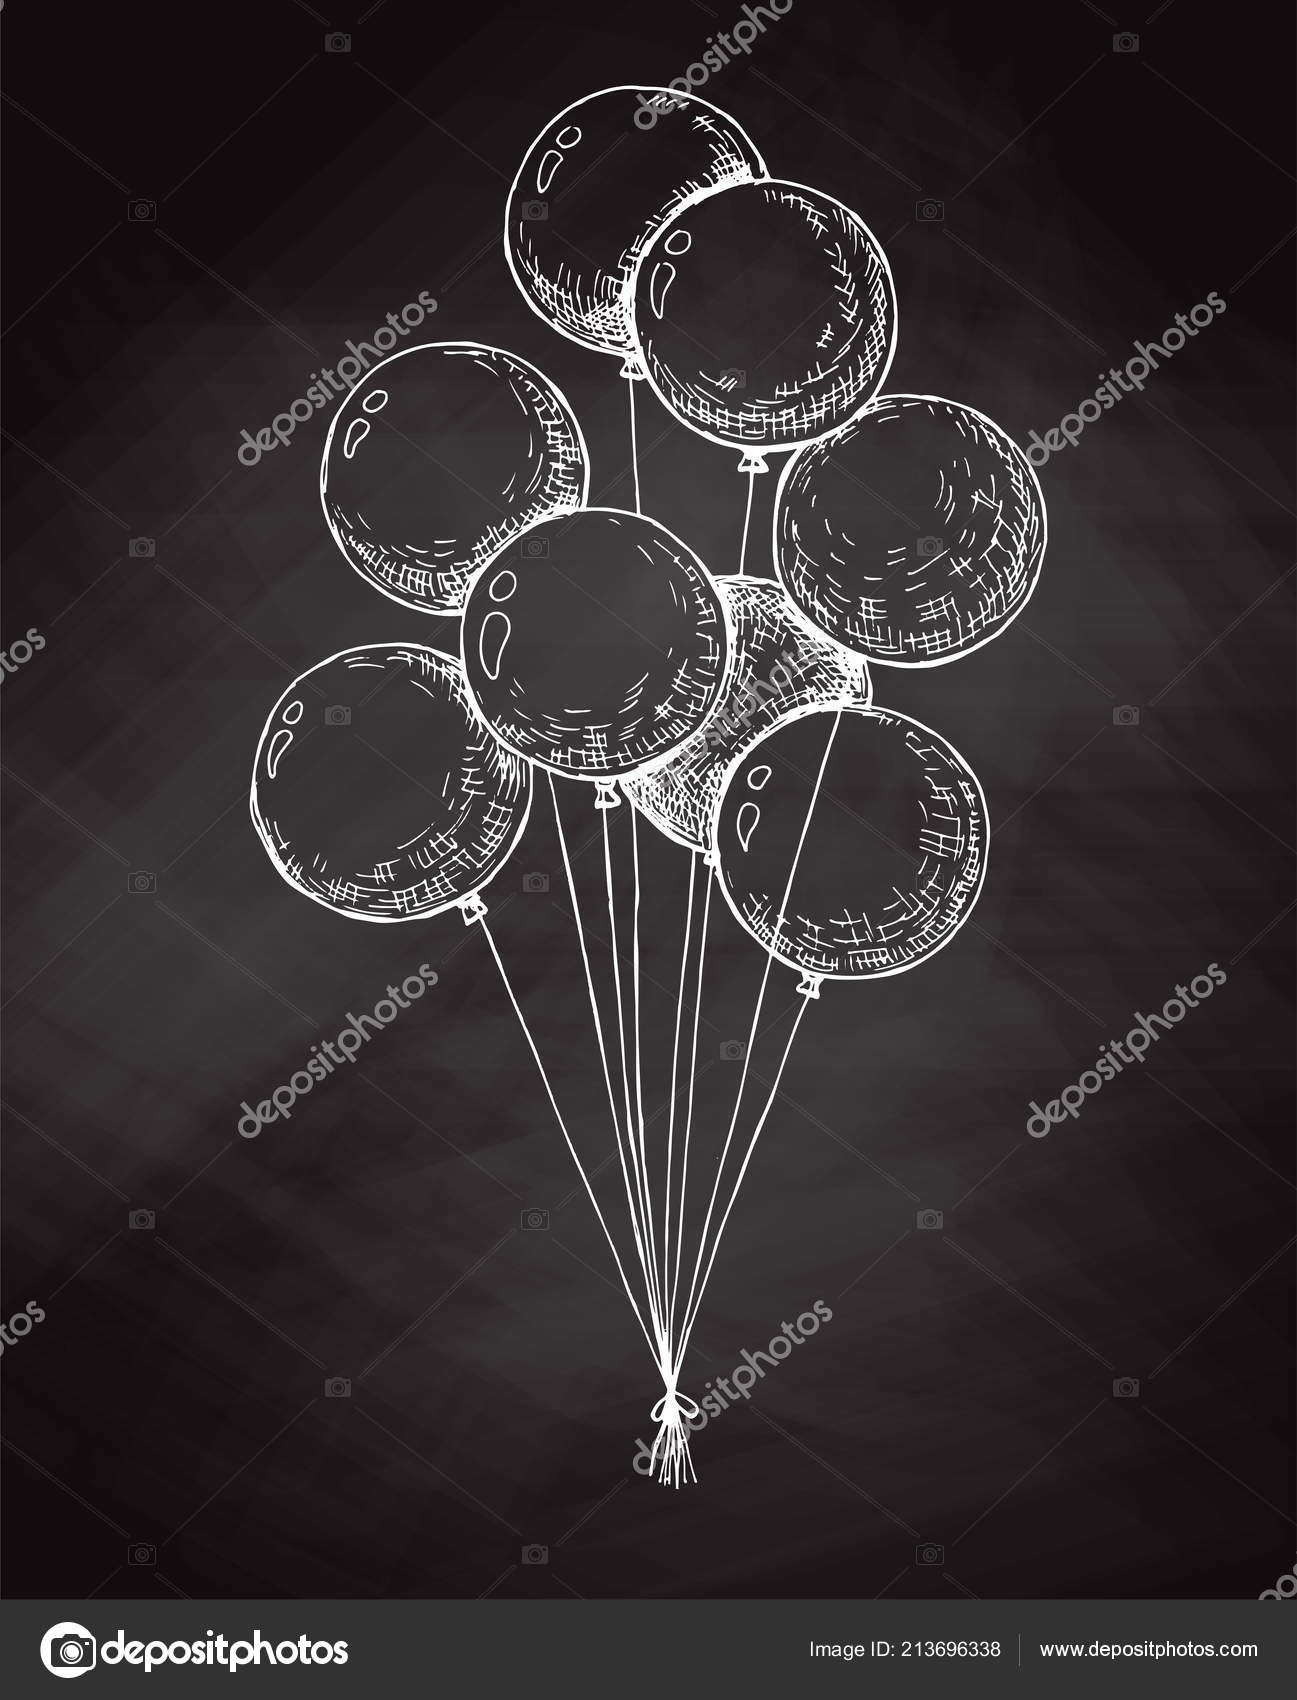 Ruban de ballon - Ficelle de ballon – Helium Balloon Inc.